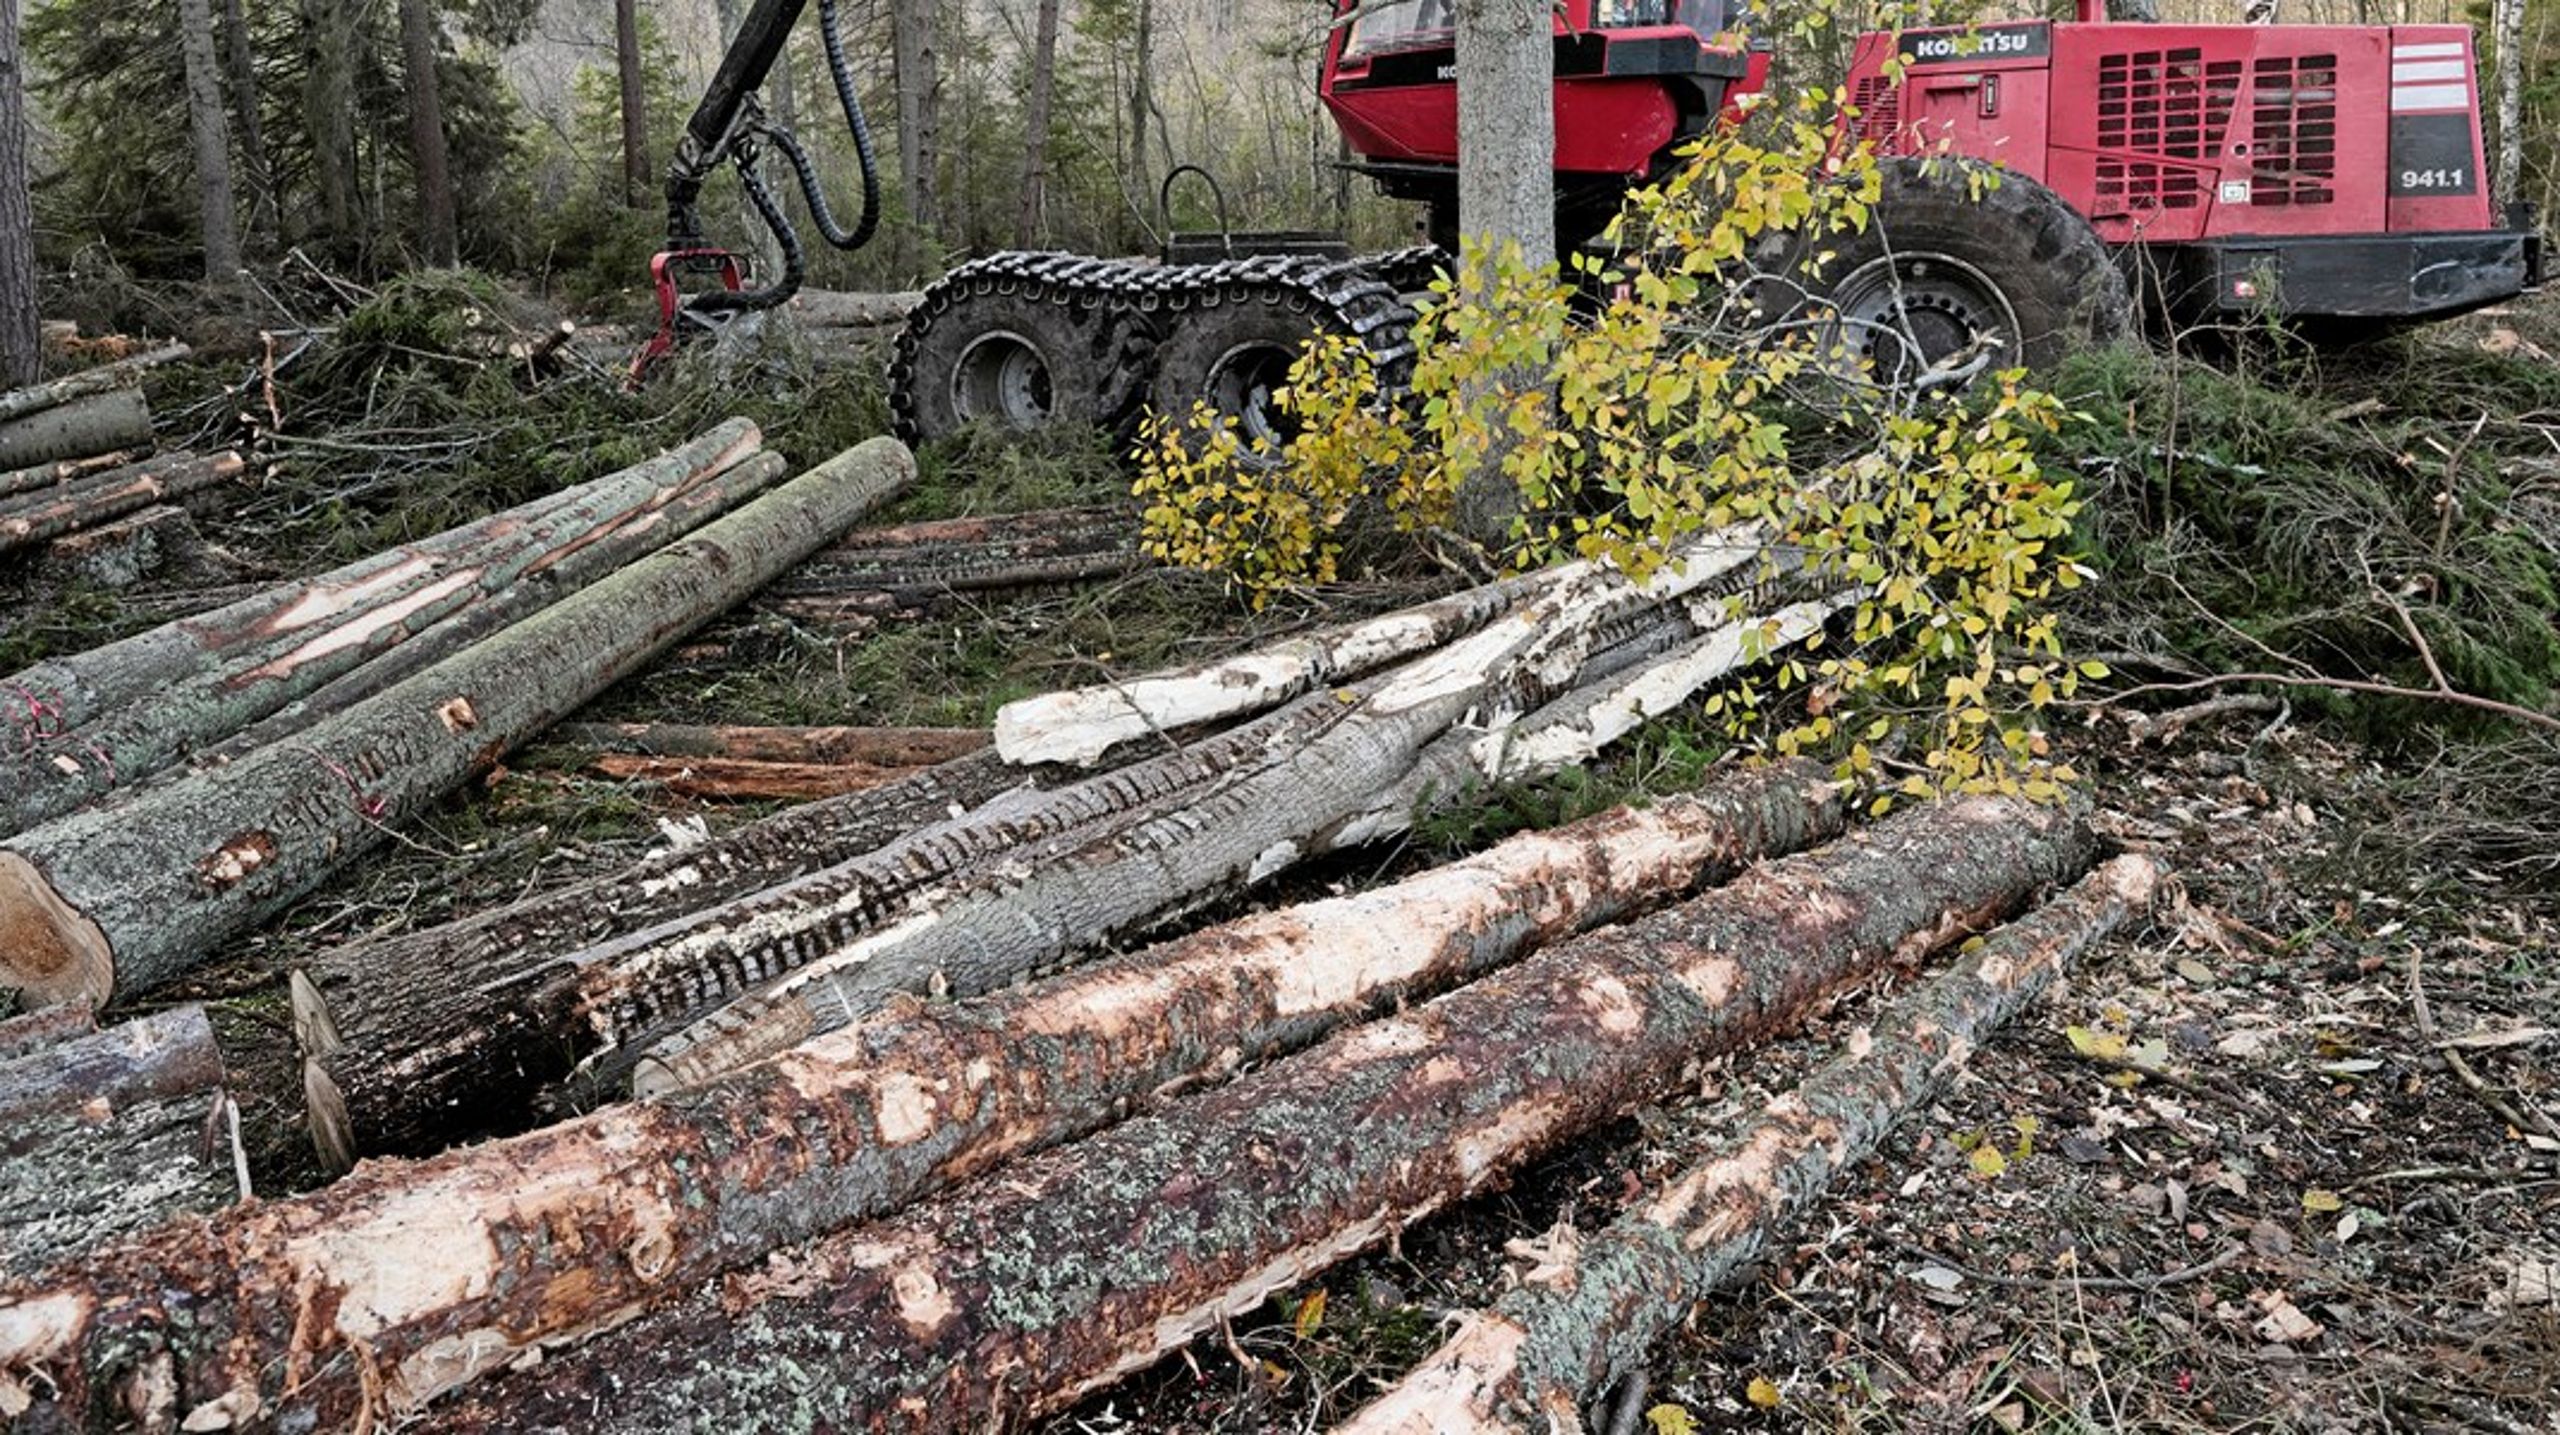 En ny regering bör snabbt tillsätta en bred parlamentarisk skogsutredning, som pekar ut en ny kurs - ett hållbart skogsbruk, skriver debattörerna.